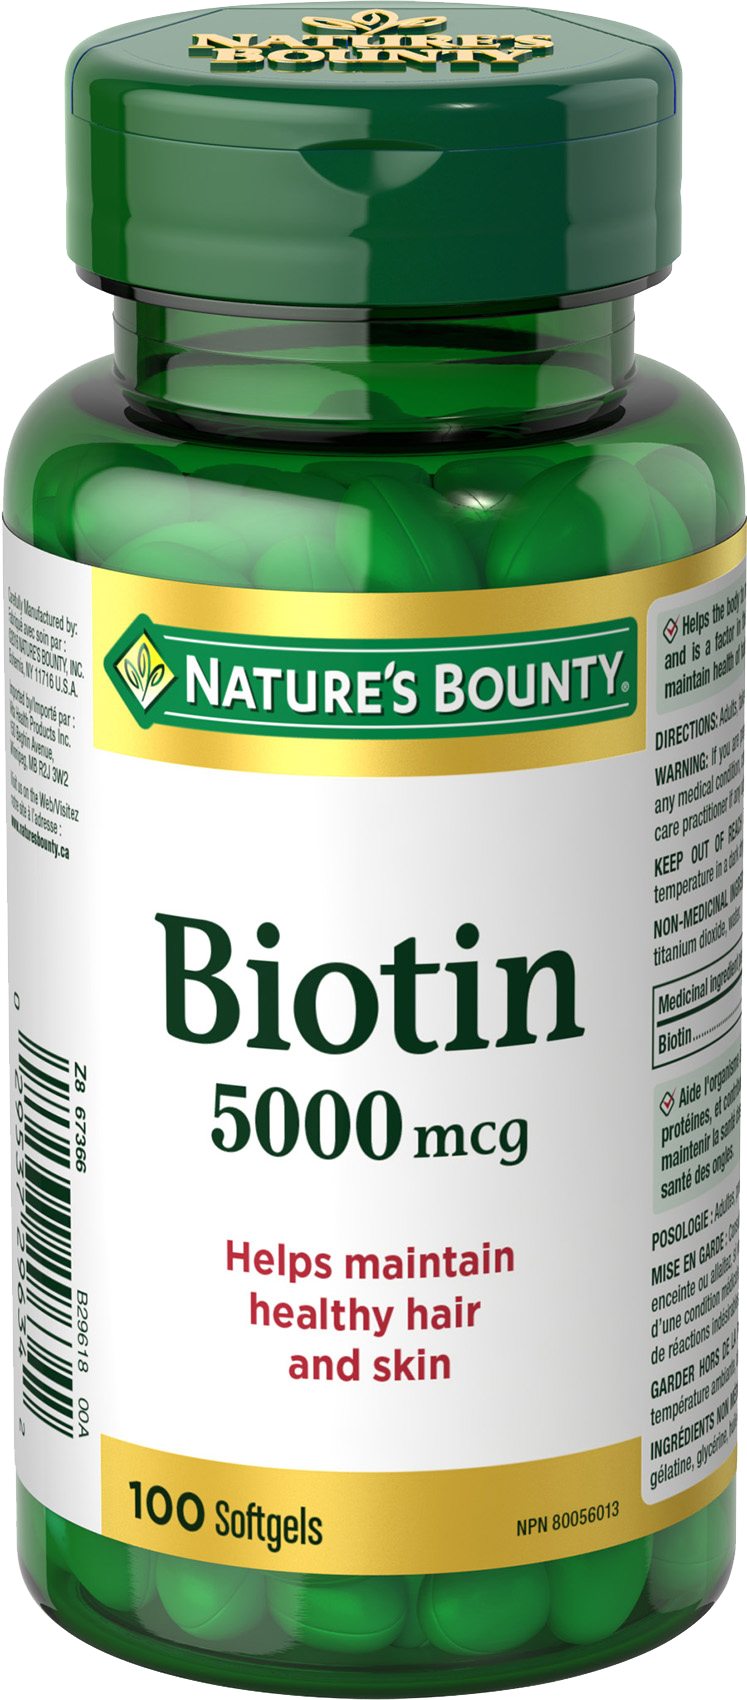 Nature's Bounty Biotin 5000mcg